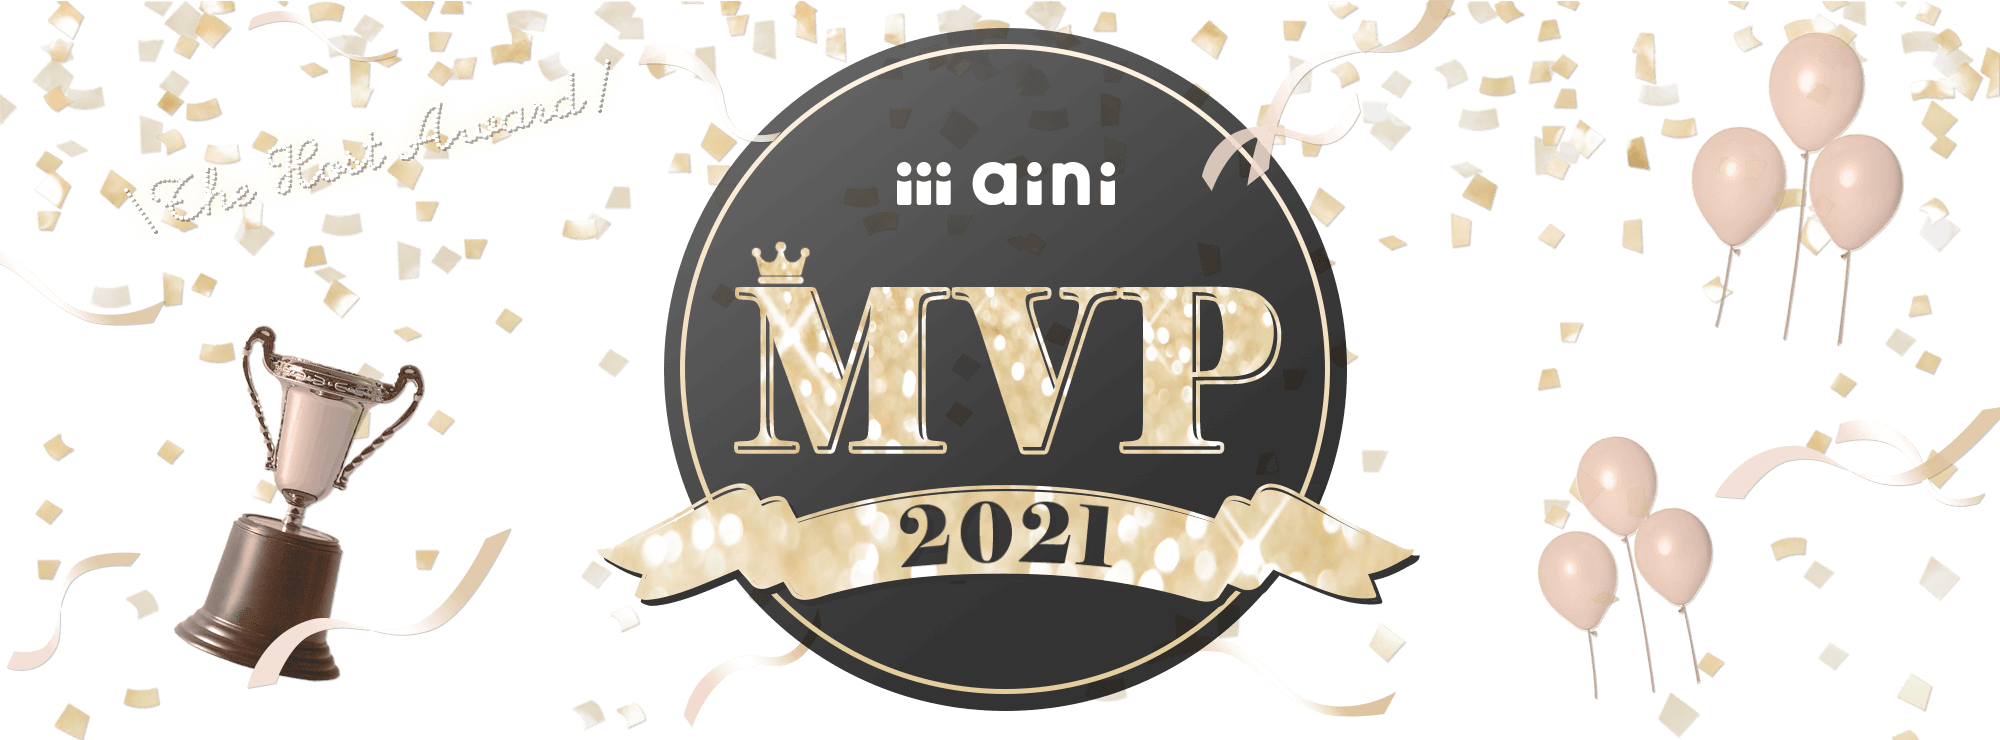 aini MVP2021